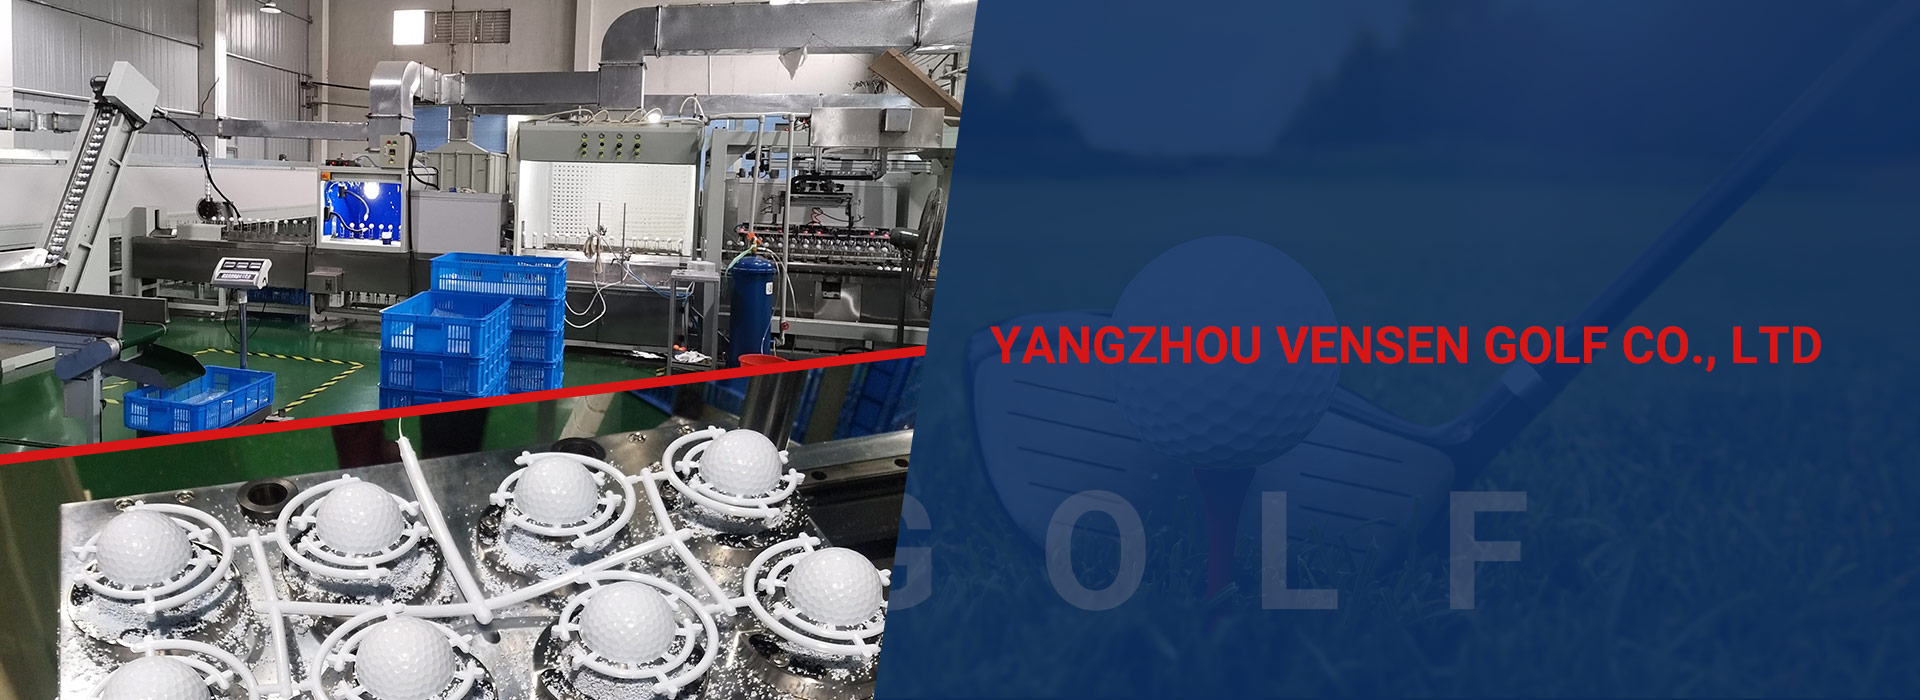 Yangzhou Vensen Golf Co., Ltd